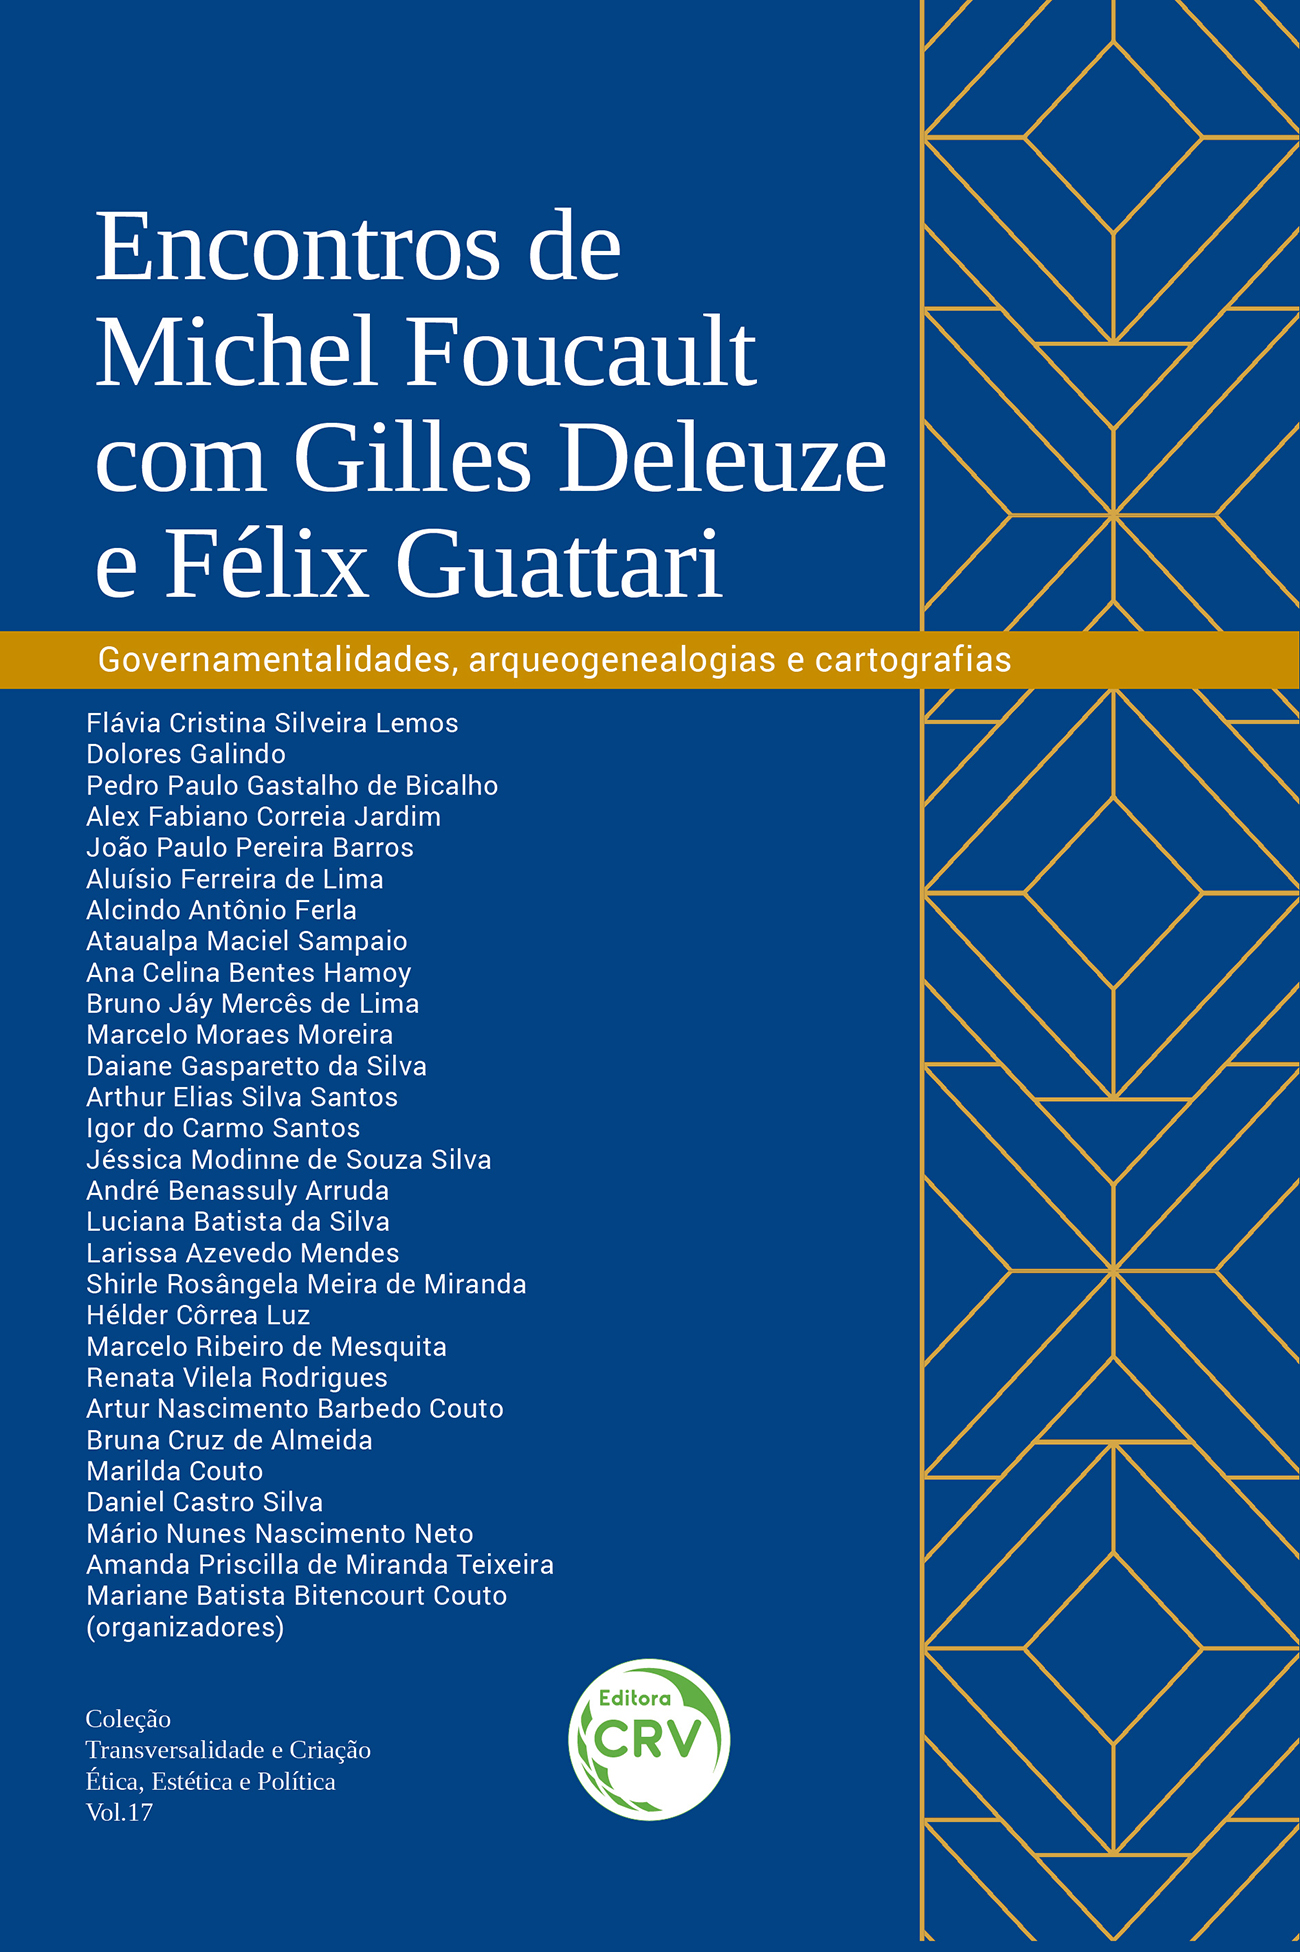 Capa do livro: ENCONTROS DE MICHEL FOUCAULT COM GILLES DELEUZE E FÉLIX GUATTARI <br> governamentalidades, arqueogenealogias e cartografias